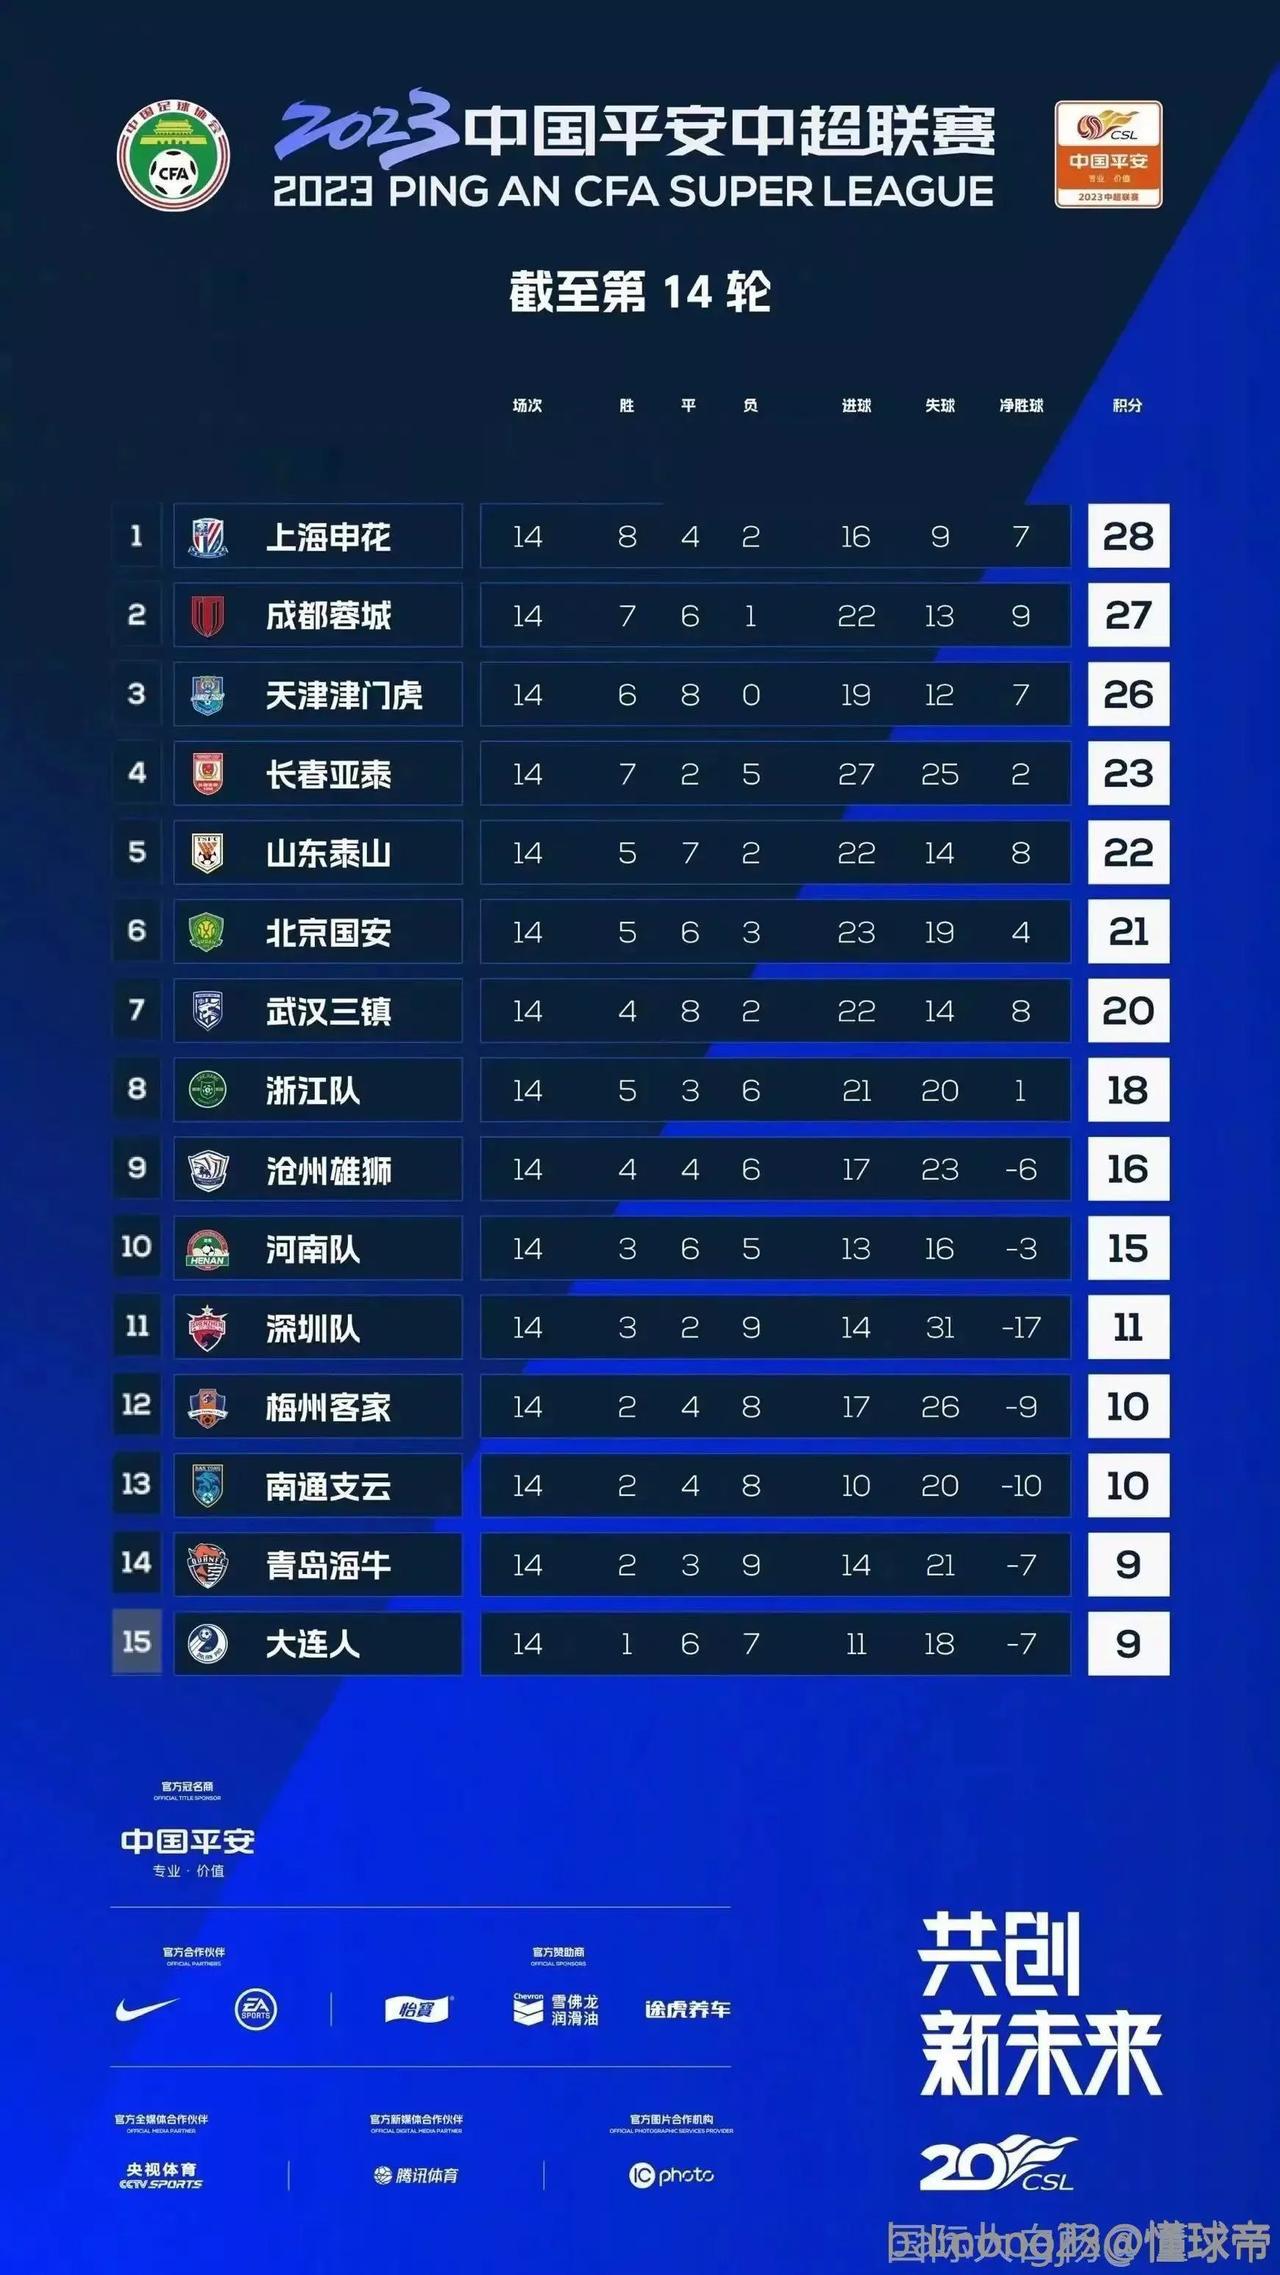 中超第15轮比赛马上开始，从积分榜看，上海申花夺得半程冠军的概率最大，不过前三名(1)